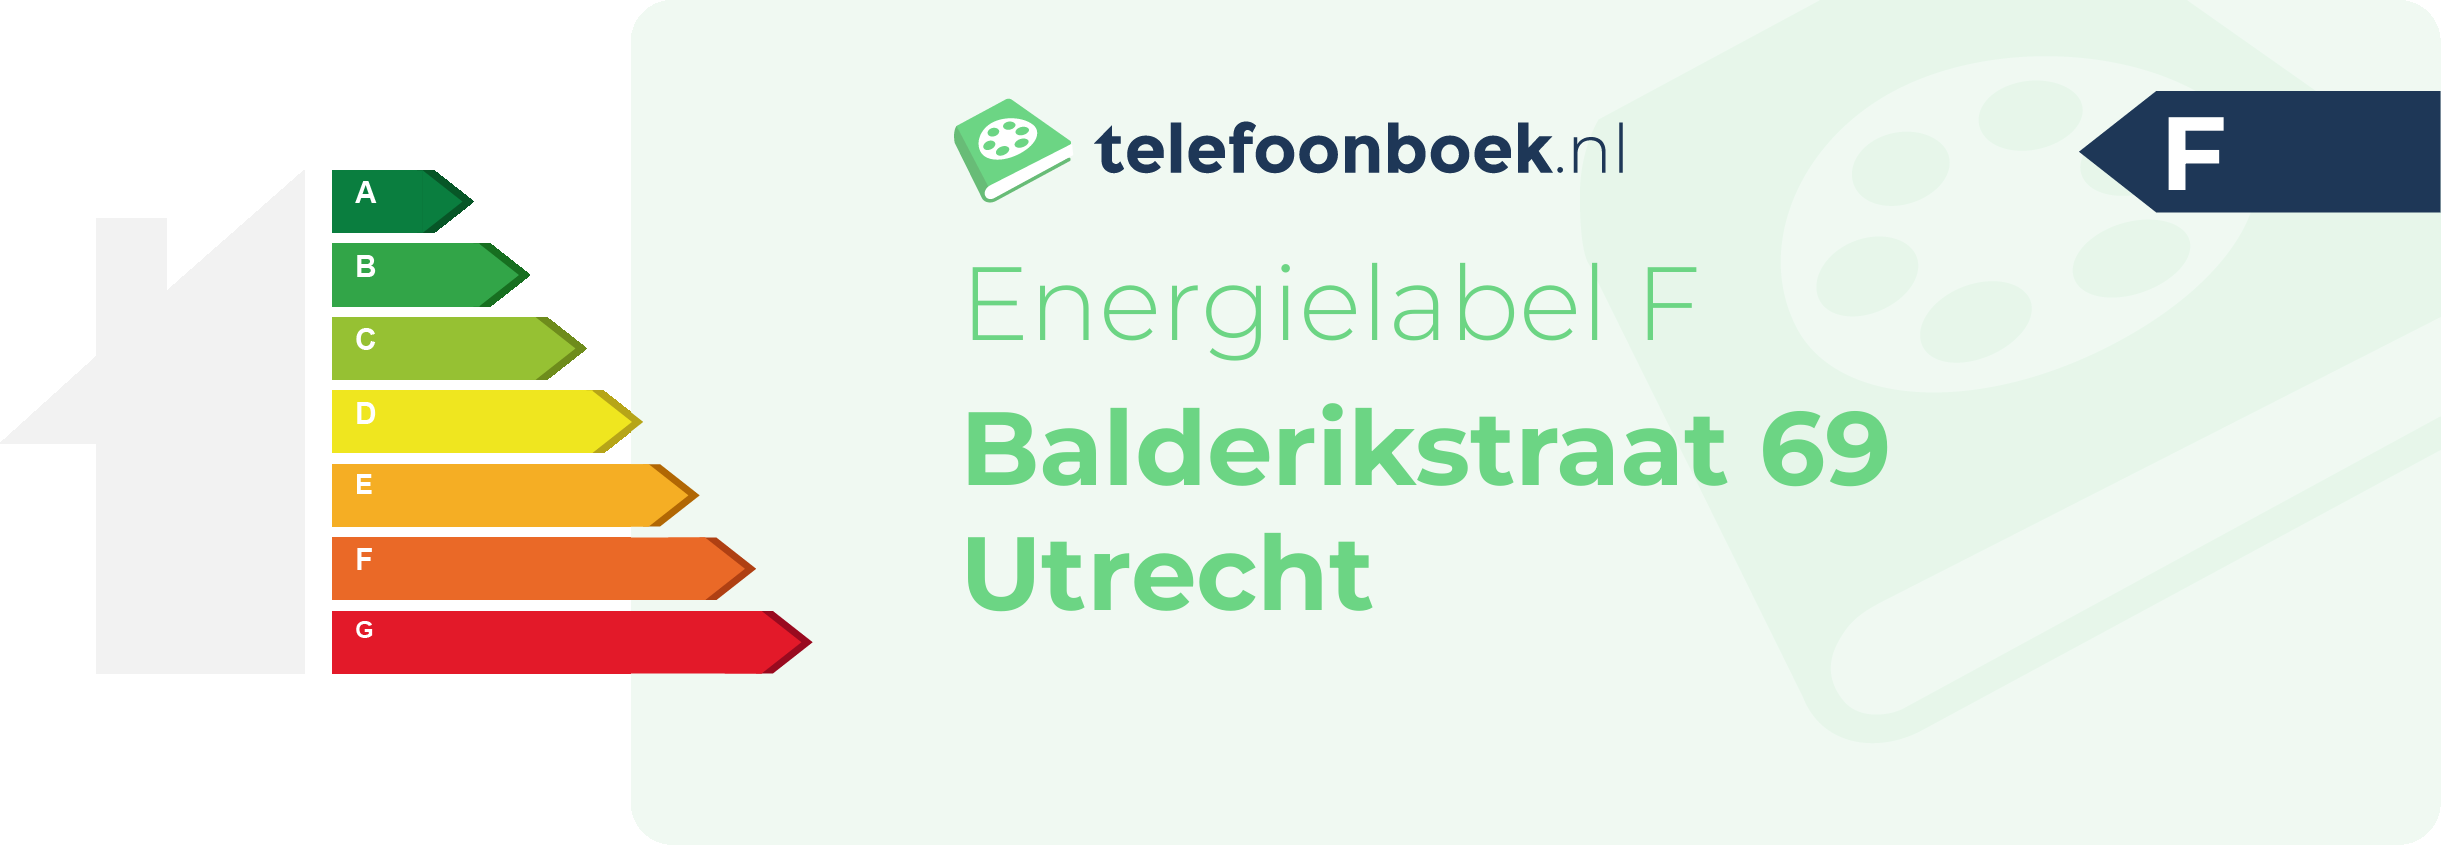 Energielabel Balderikstraat 69 Utrecht